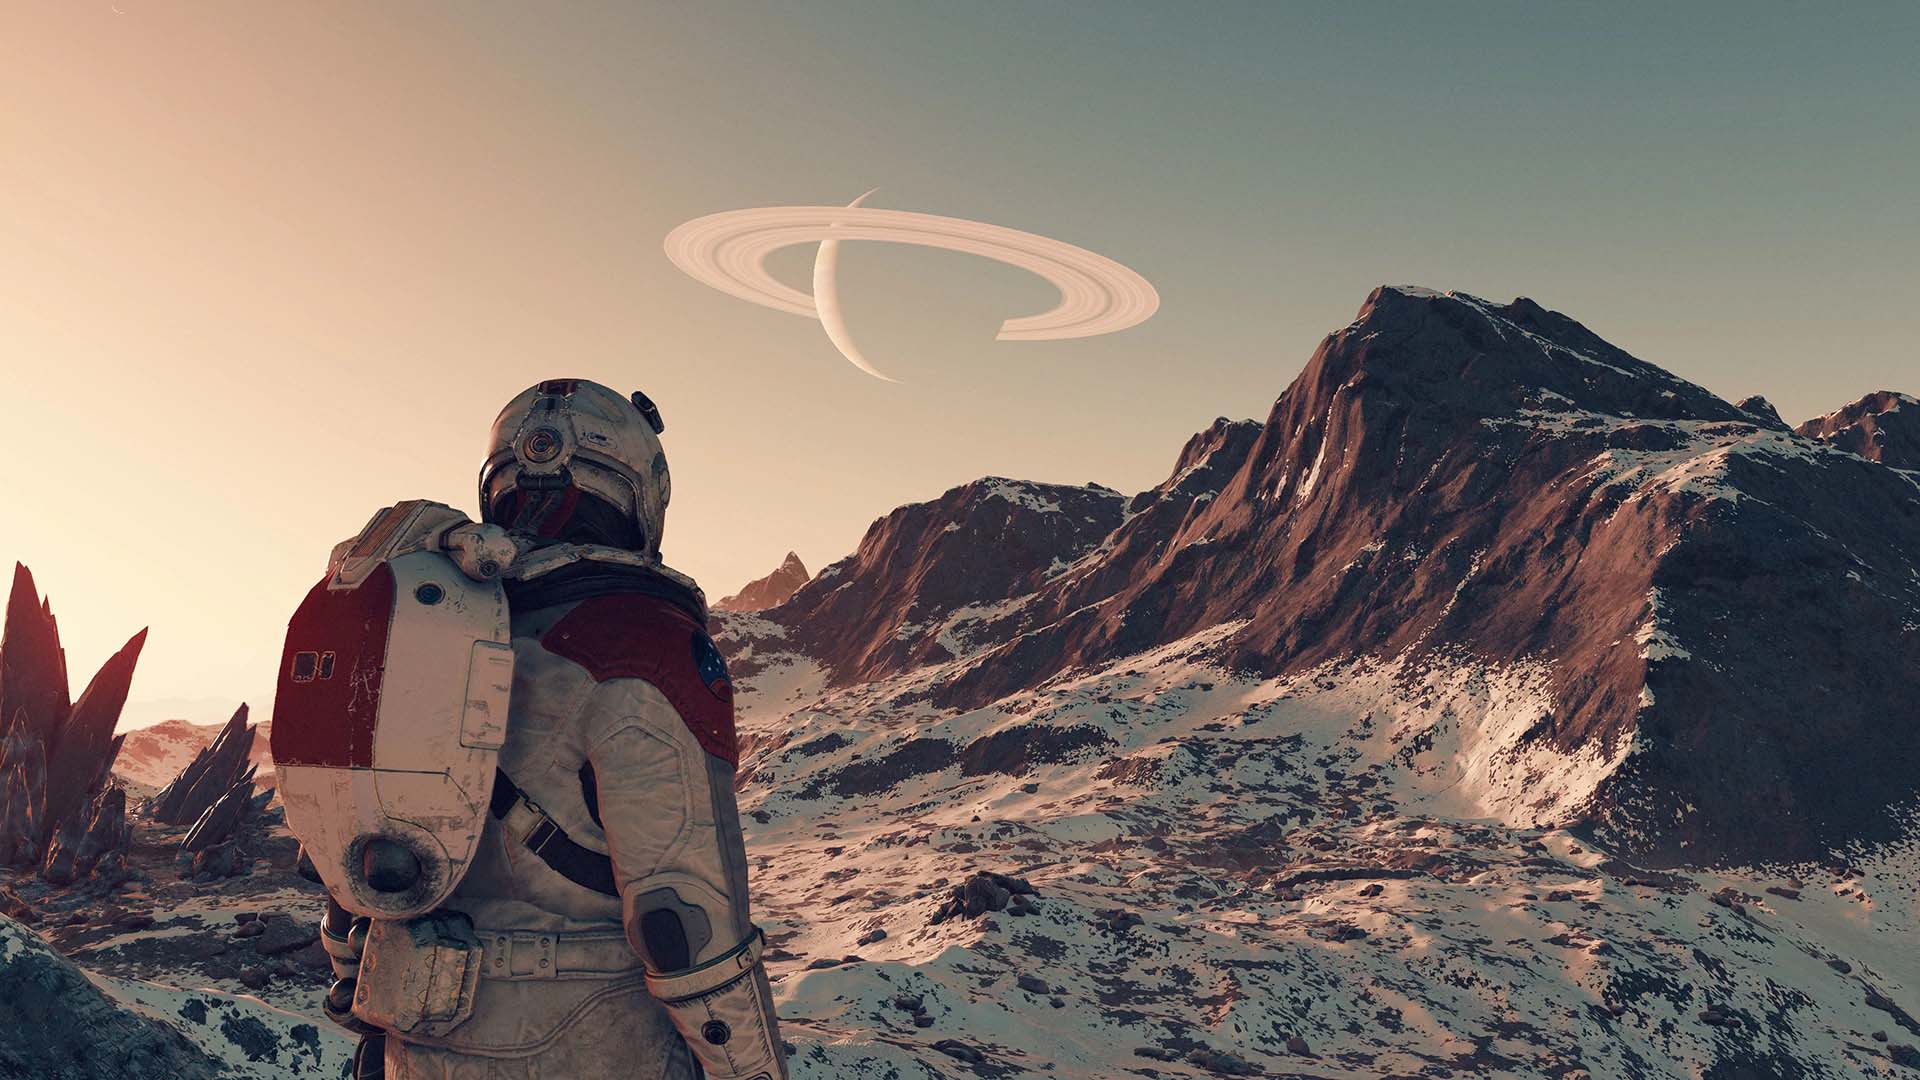 Le personnage-joueur dans Starfield regarde une montagne enneigée, avec une planète lointaine et ses anneaux visibles dans le ciel